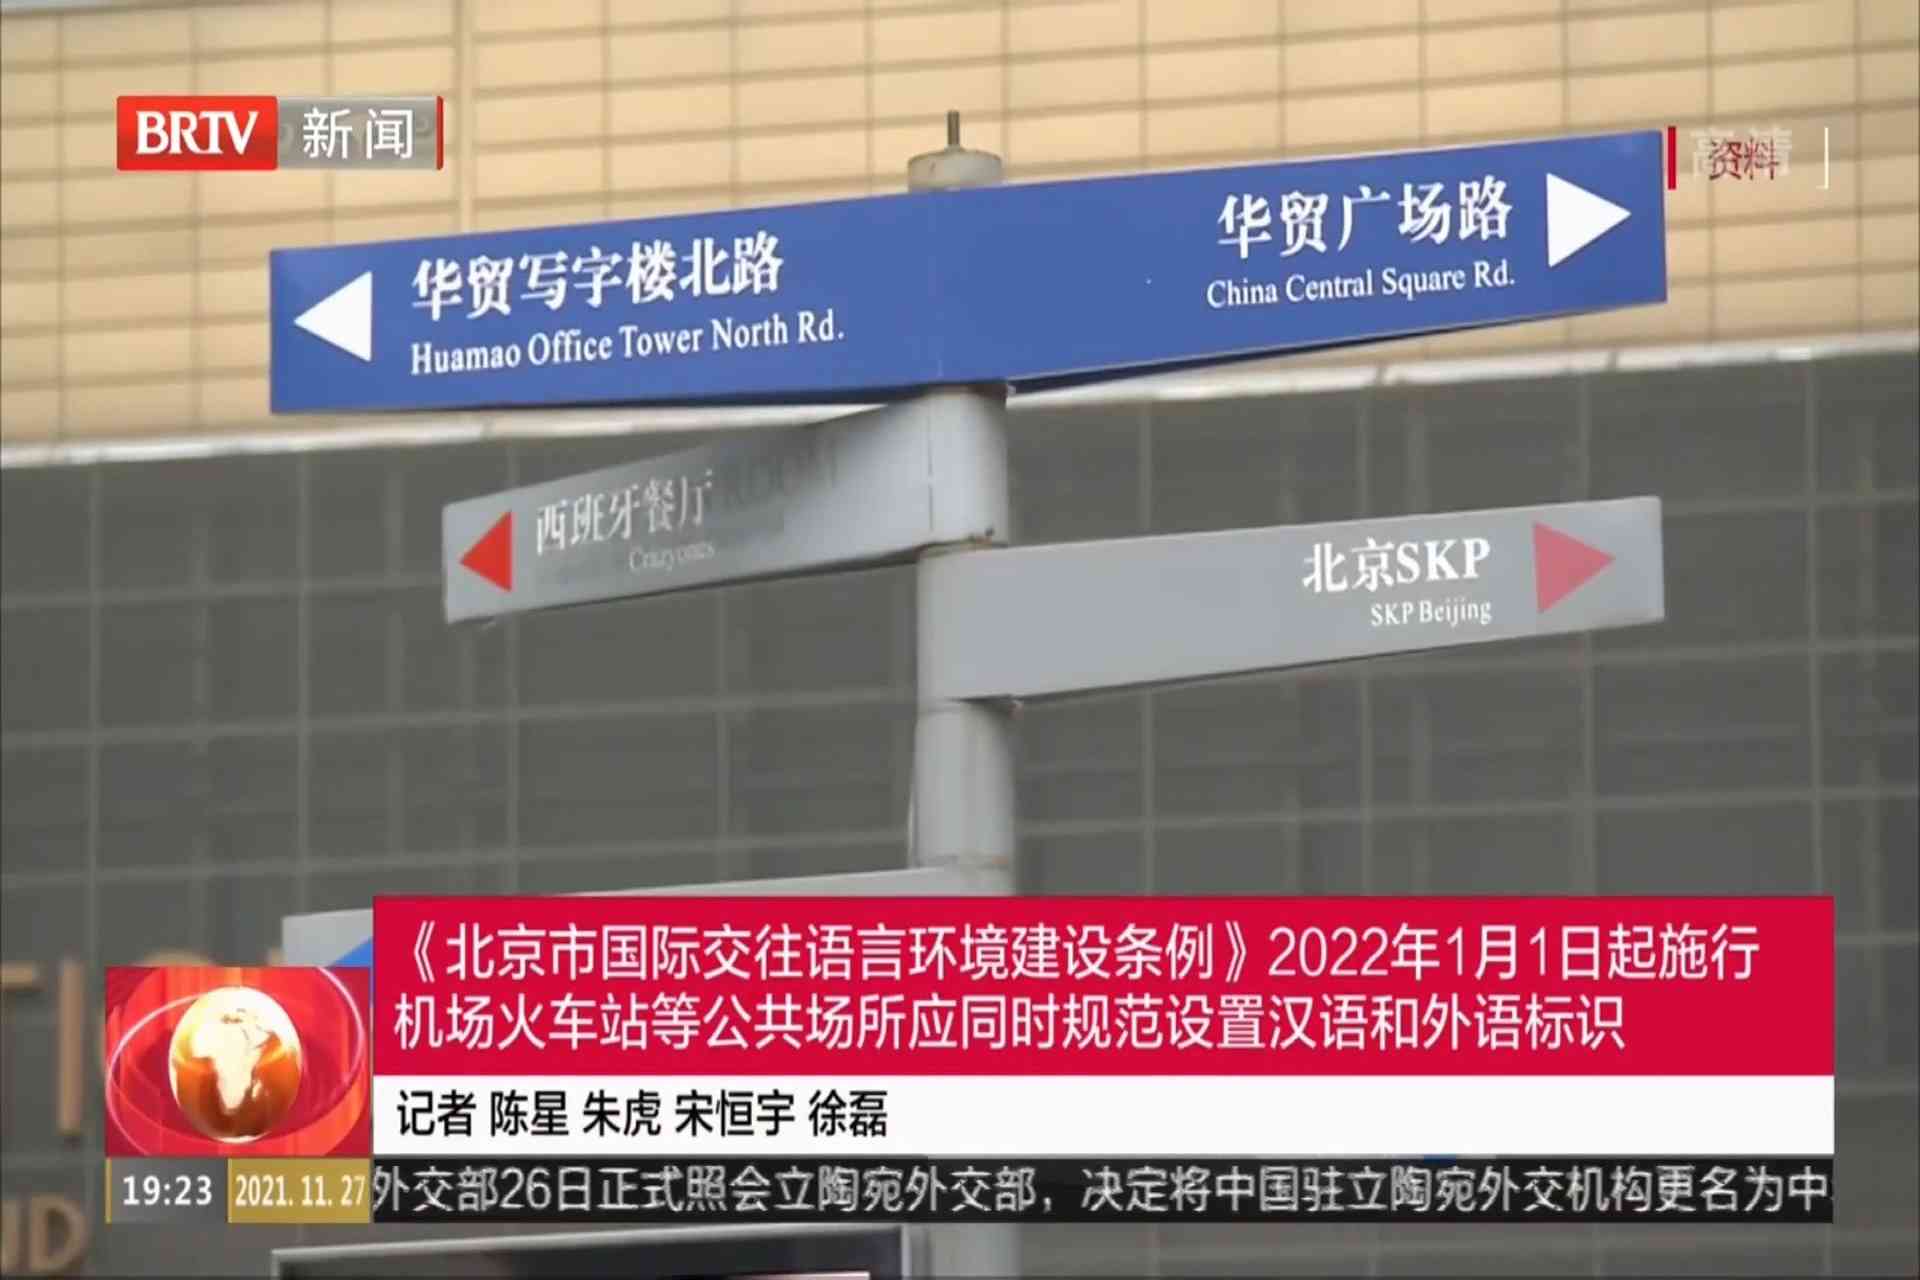 《北京市国际交往语言环境建设条例》自2022年1月1日起施行 机场火车站等公共场所应同时规范设置汉语和外语标识